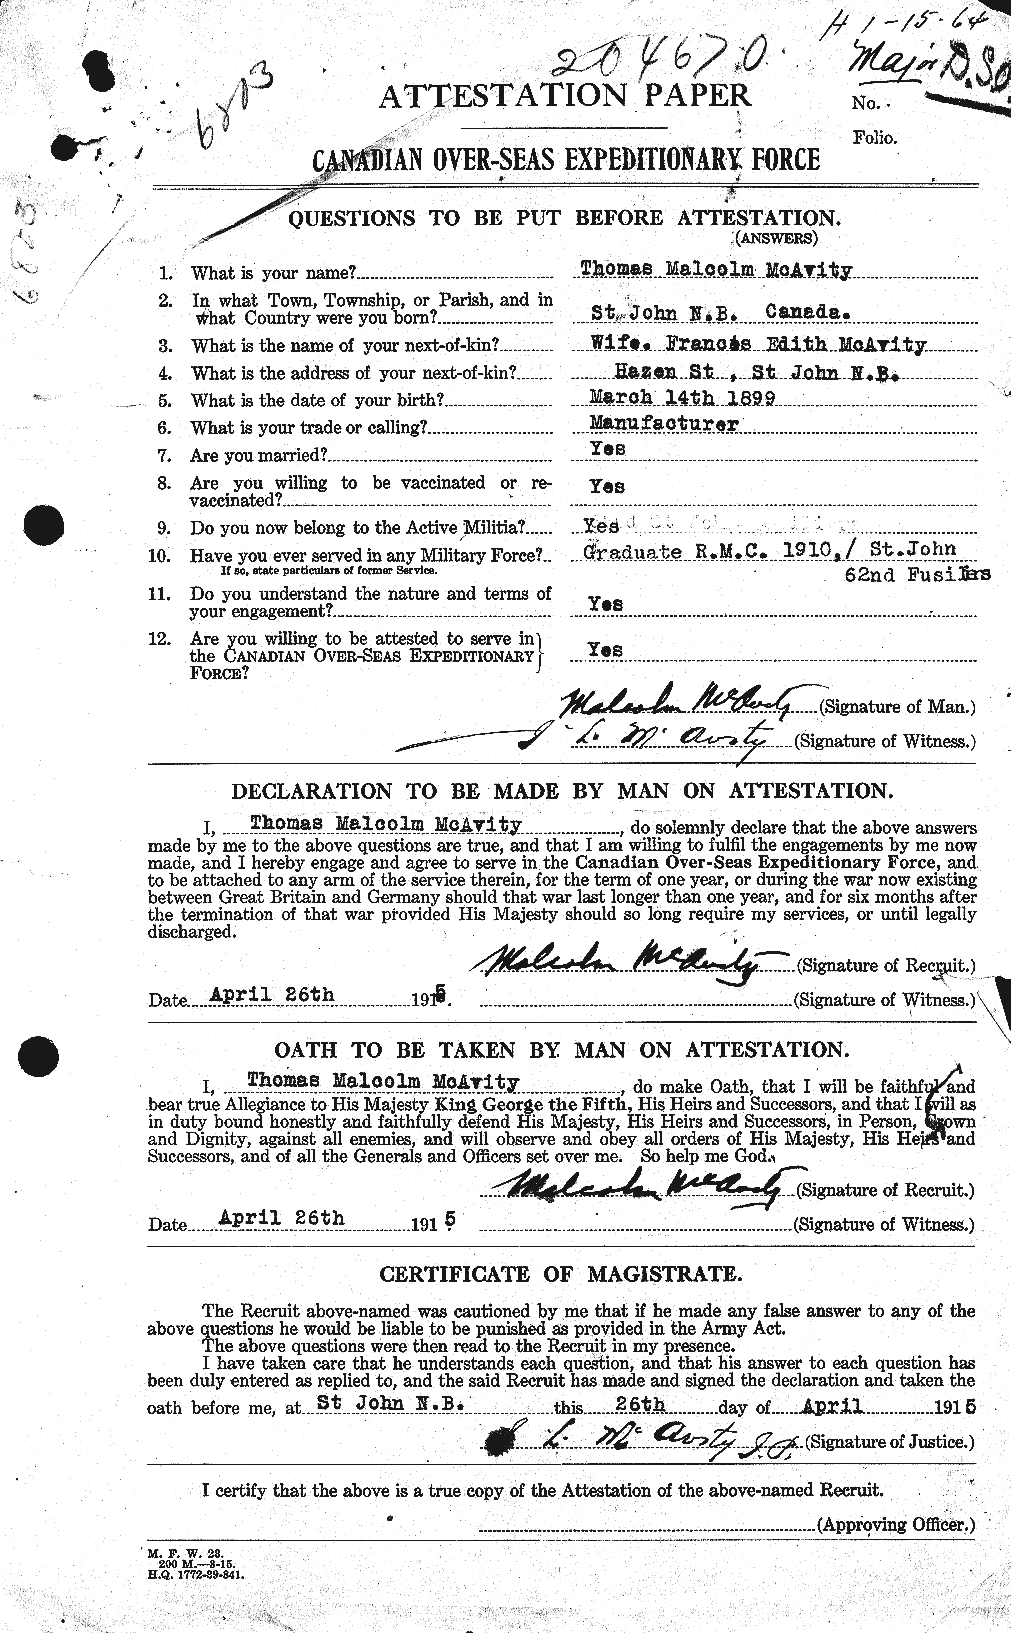 Dossiers du Personnel de la Première Guerre mondiale - CEC 130039a